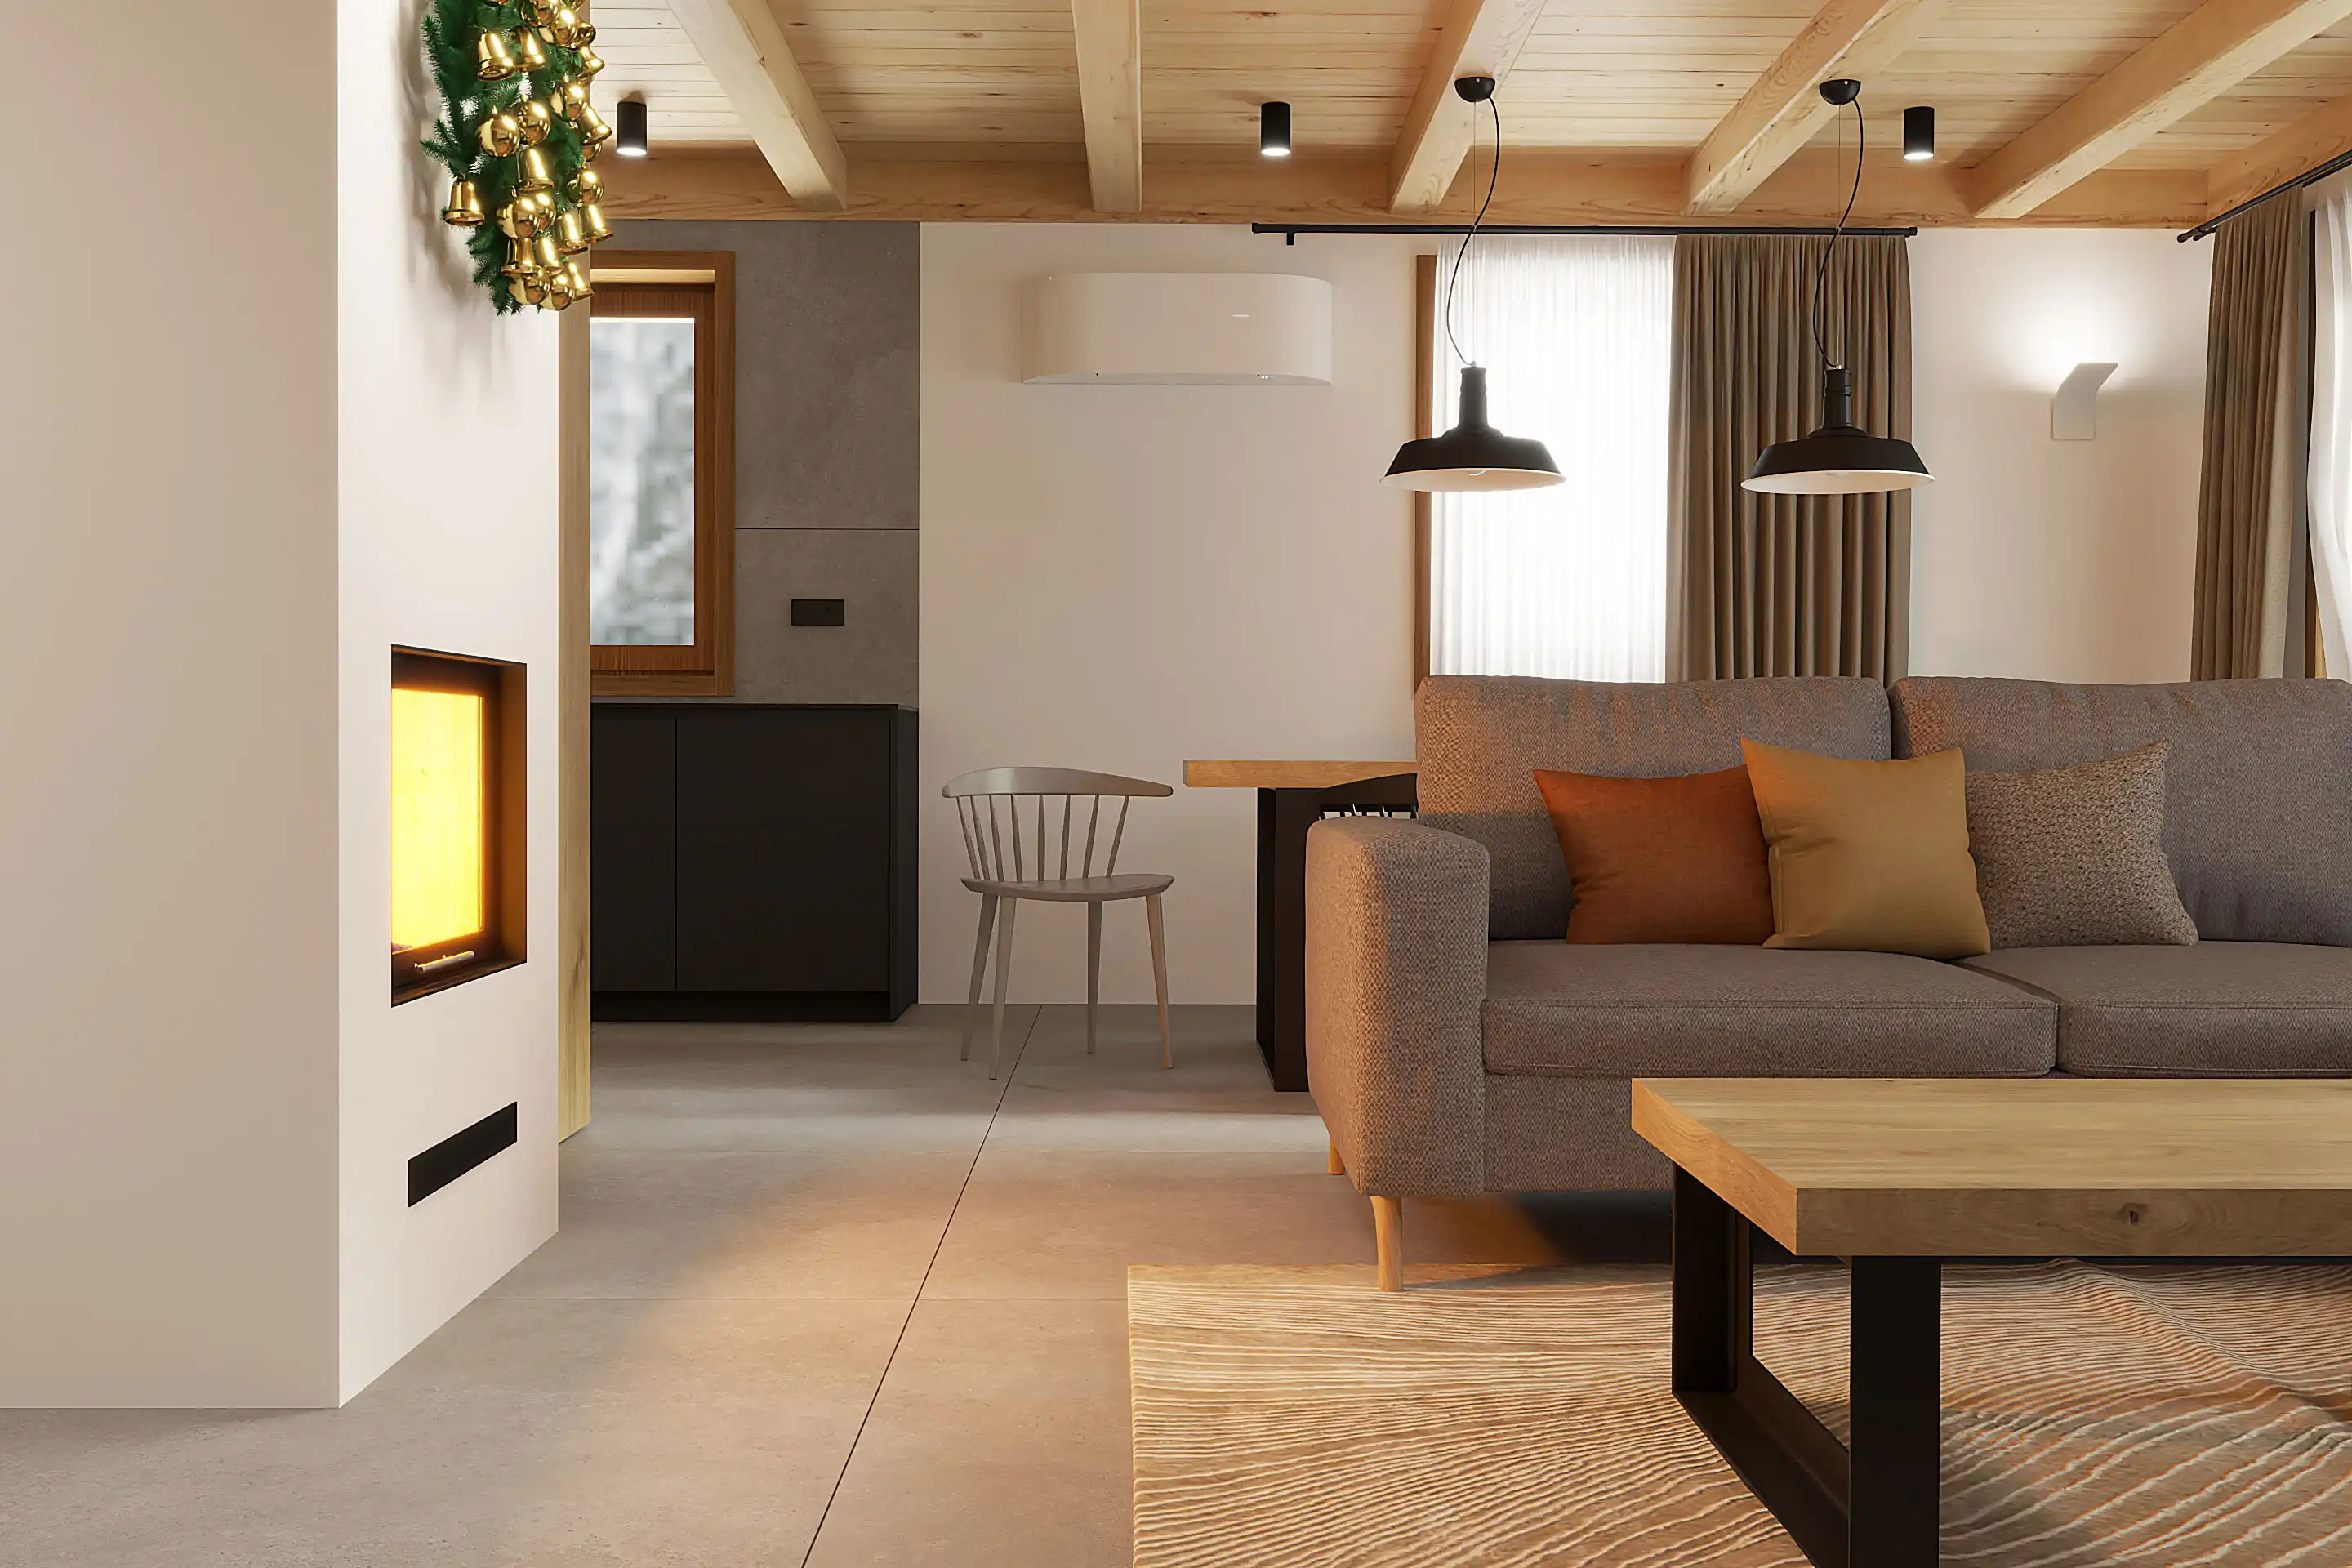 Moderná chata kombinuje drevený strop s veľkoformátovou dlažbou.